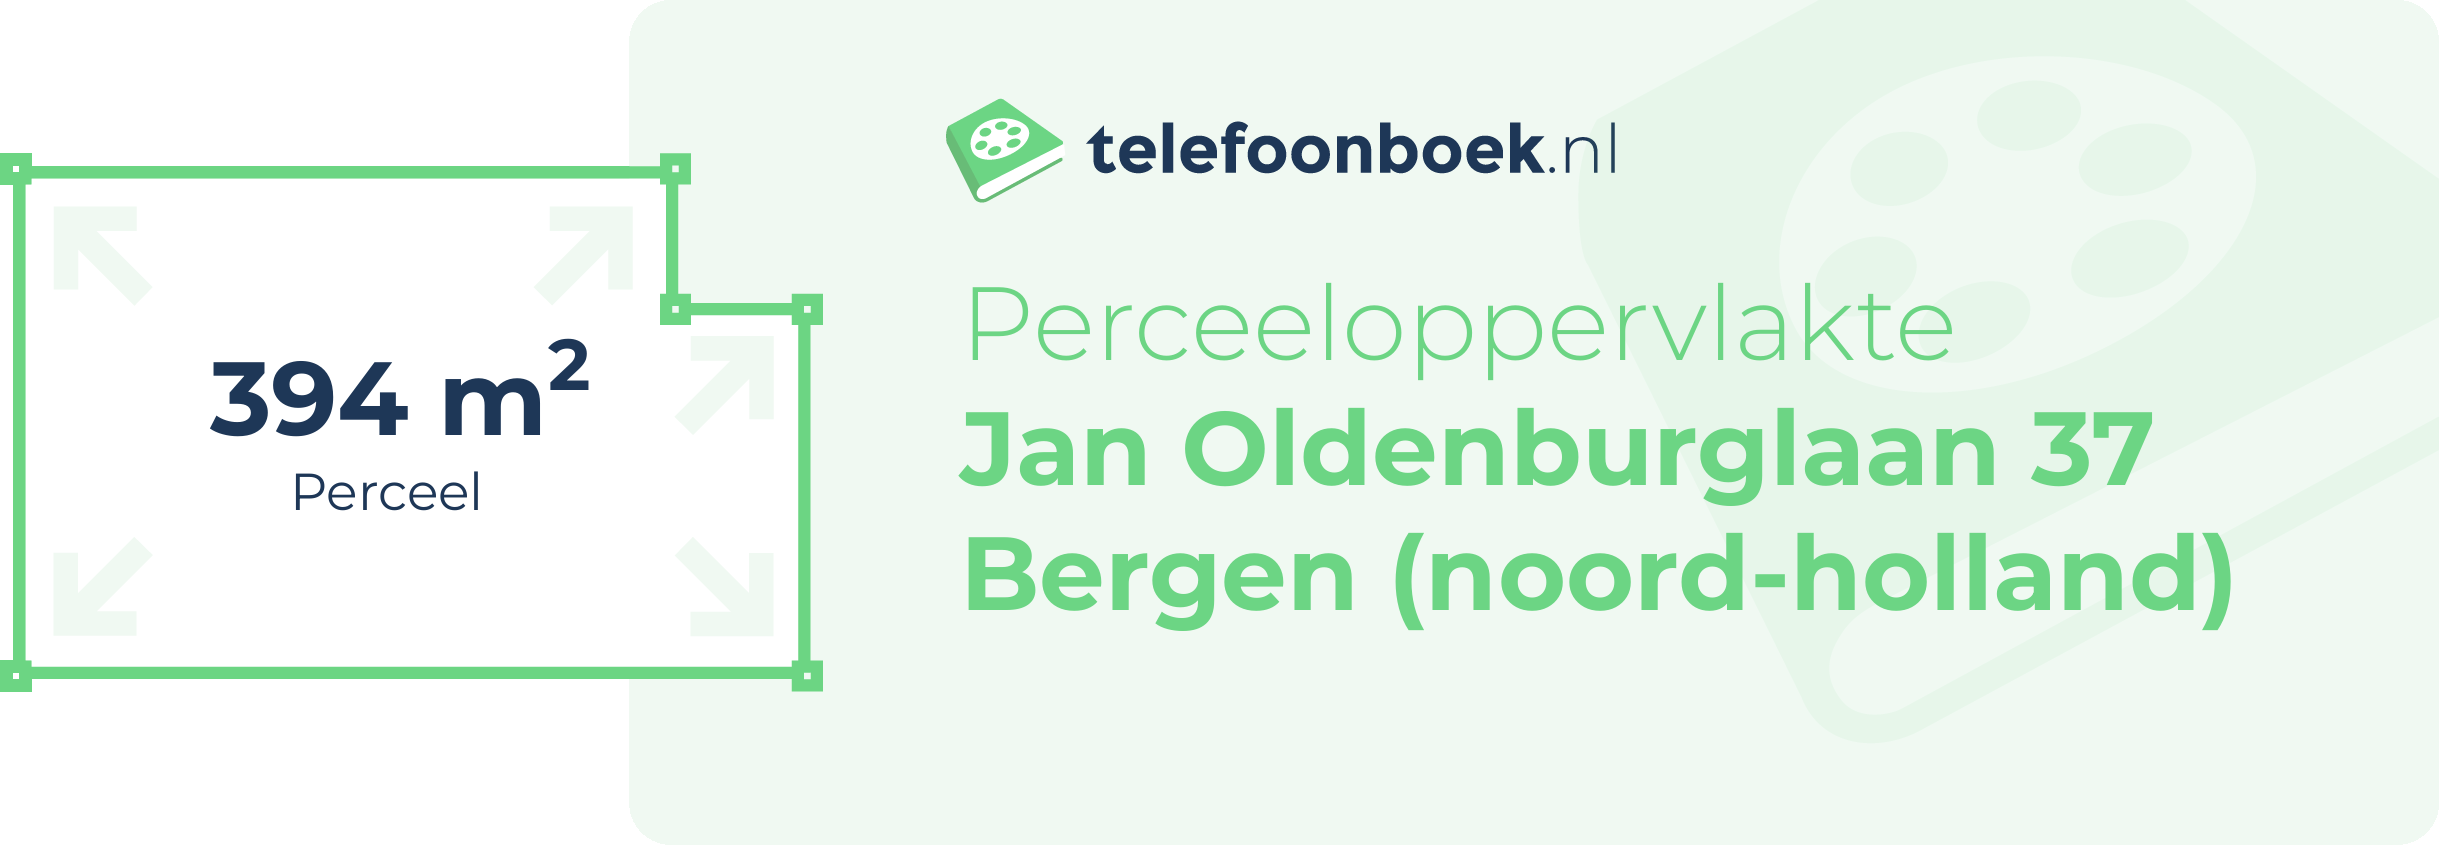 Perceeloppervlakte Jan Oldenburglaan 37 Bergen (Noord-Holland)